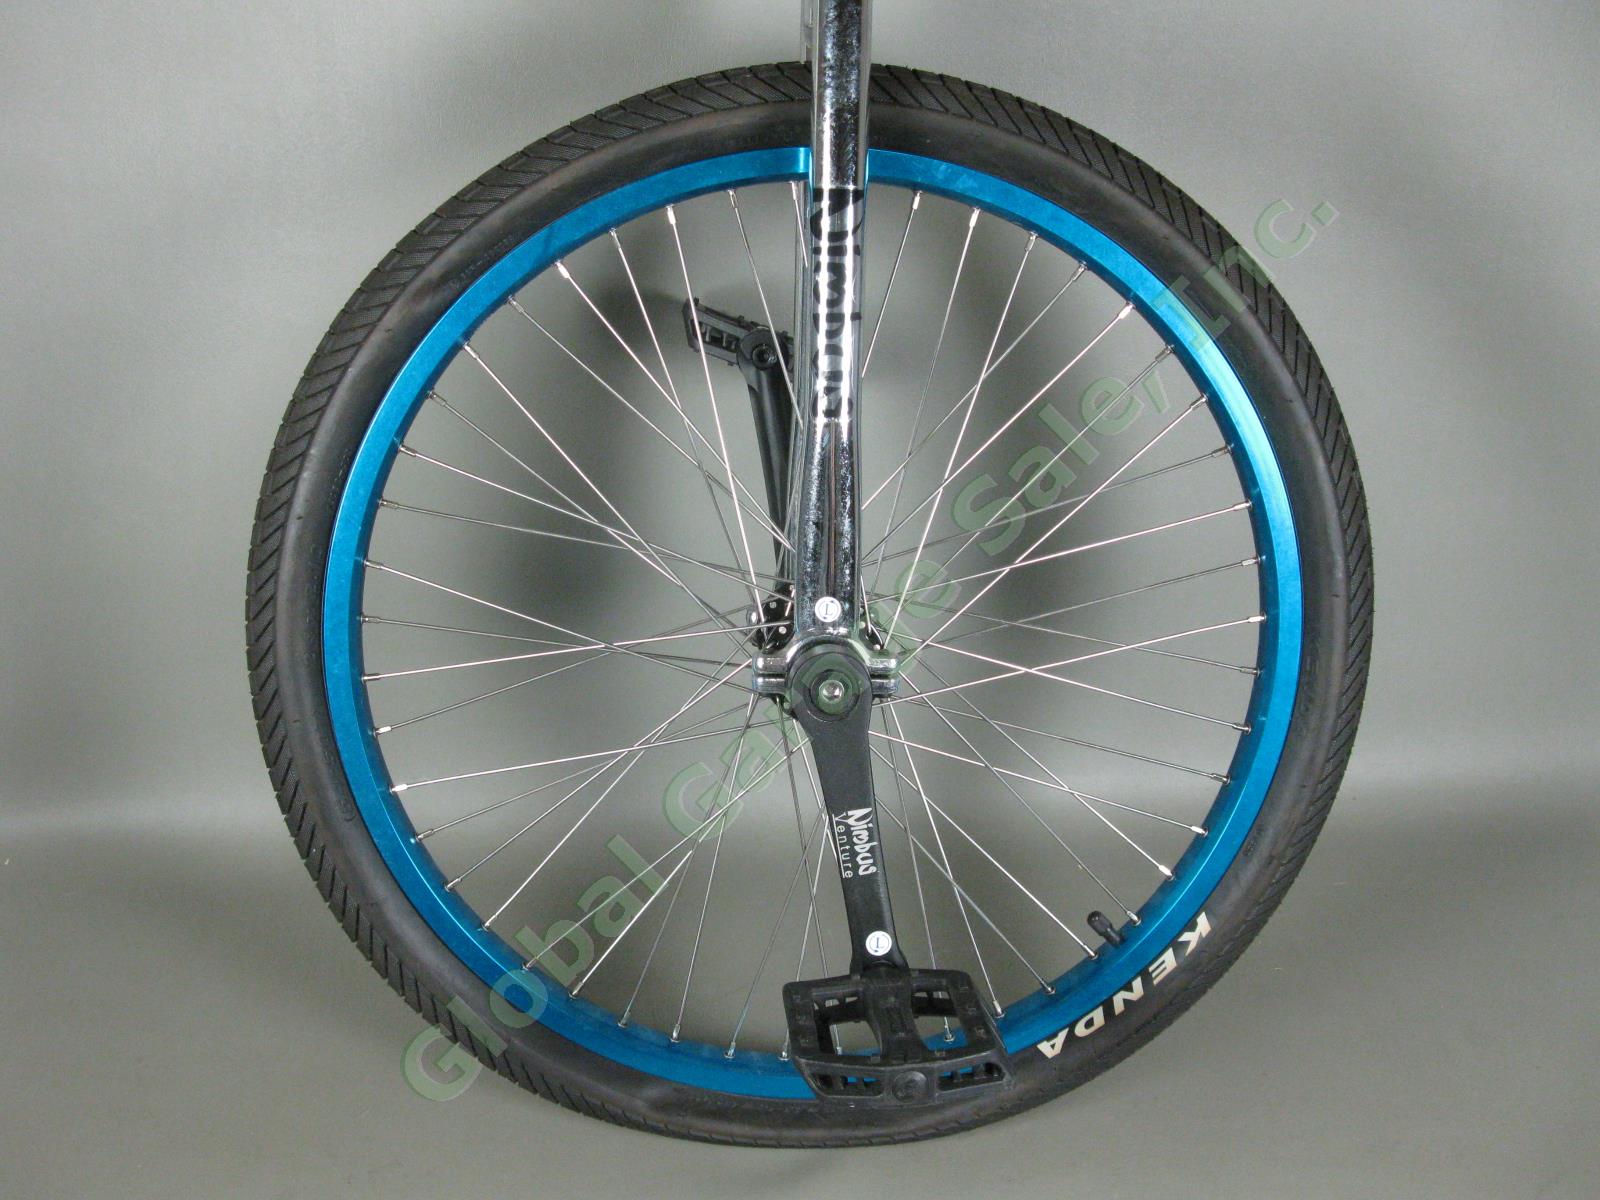 24" Nimbus Unicycle Kris Holm Saddle Seat FS2432 Rim Kenda 54-507 Tire Exc Cond 1